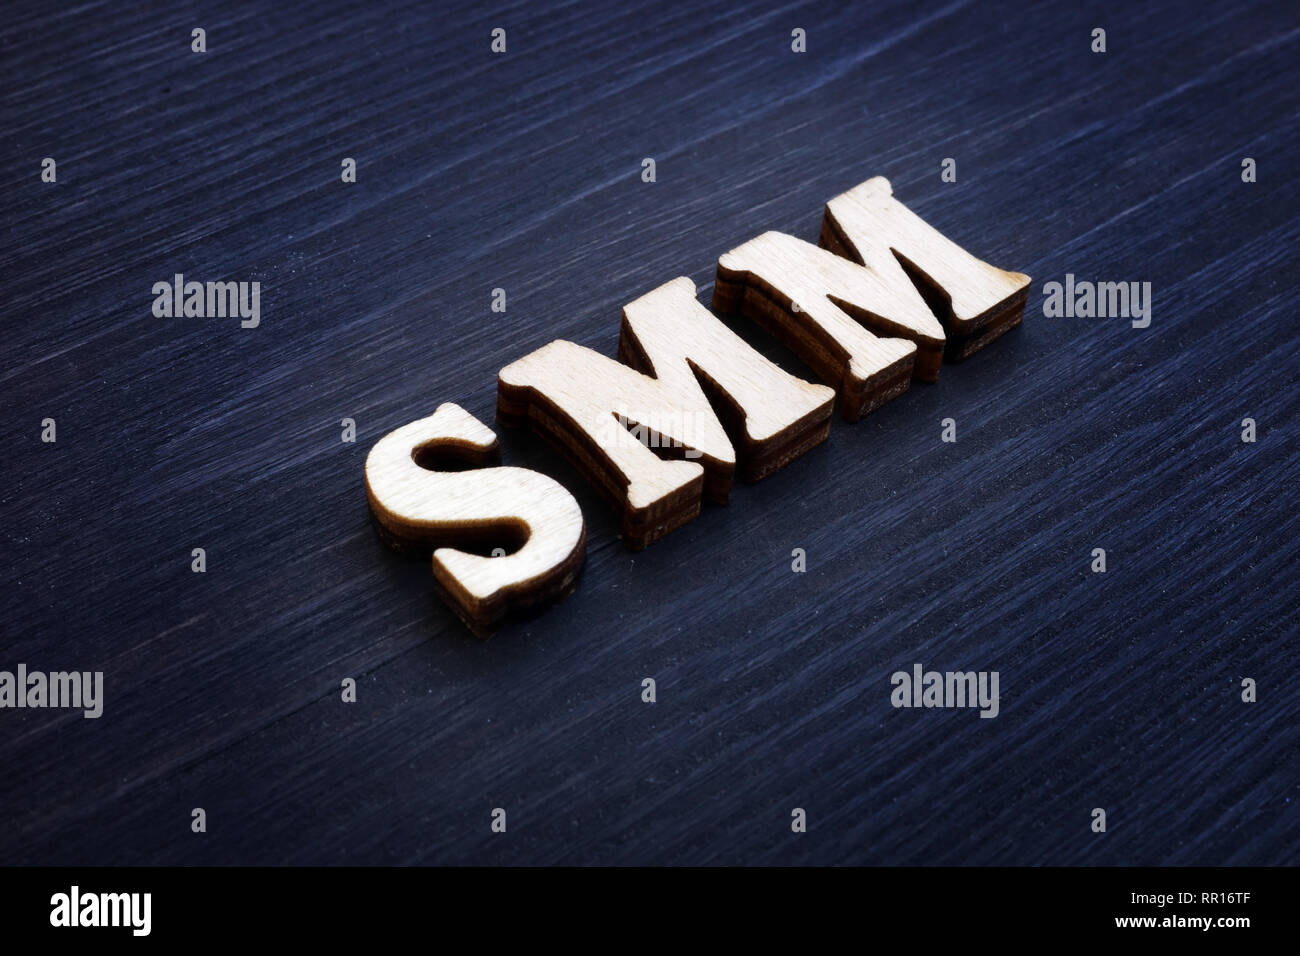 Abkürzung SMM Social Media Marketing von Holz- briefe. Stockfoto